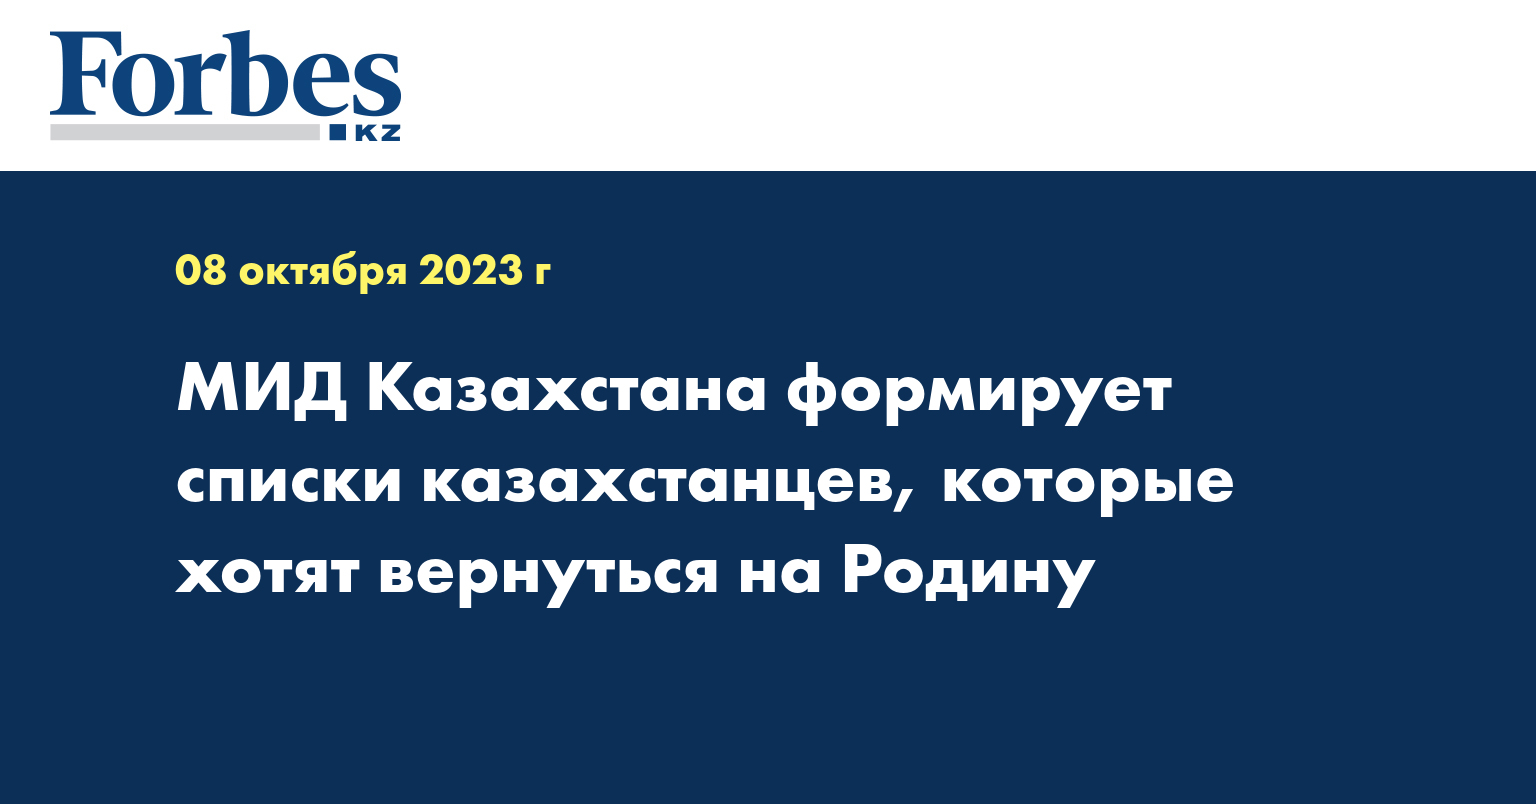 МИД Казахстана формирует списки казахстанцев, которые хотят вернуться на Родину